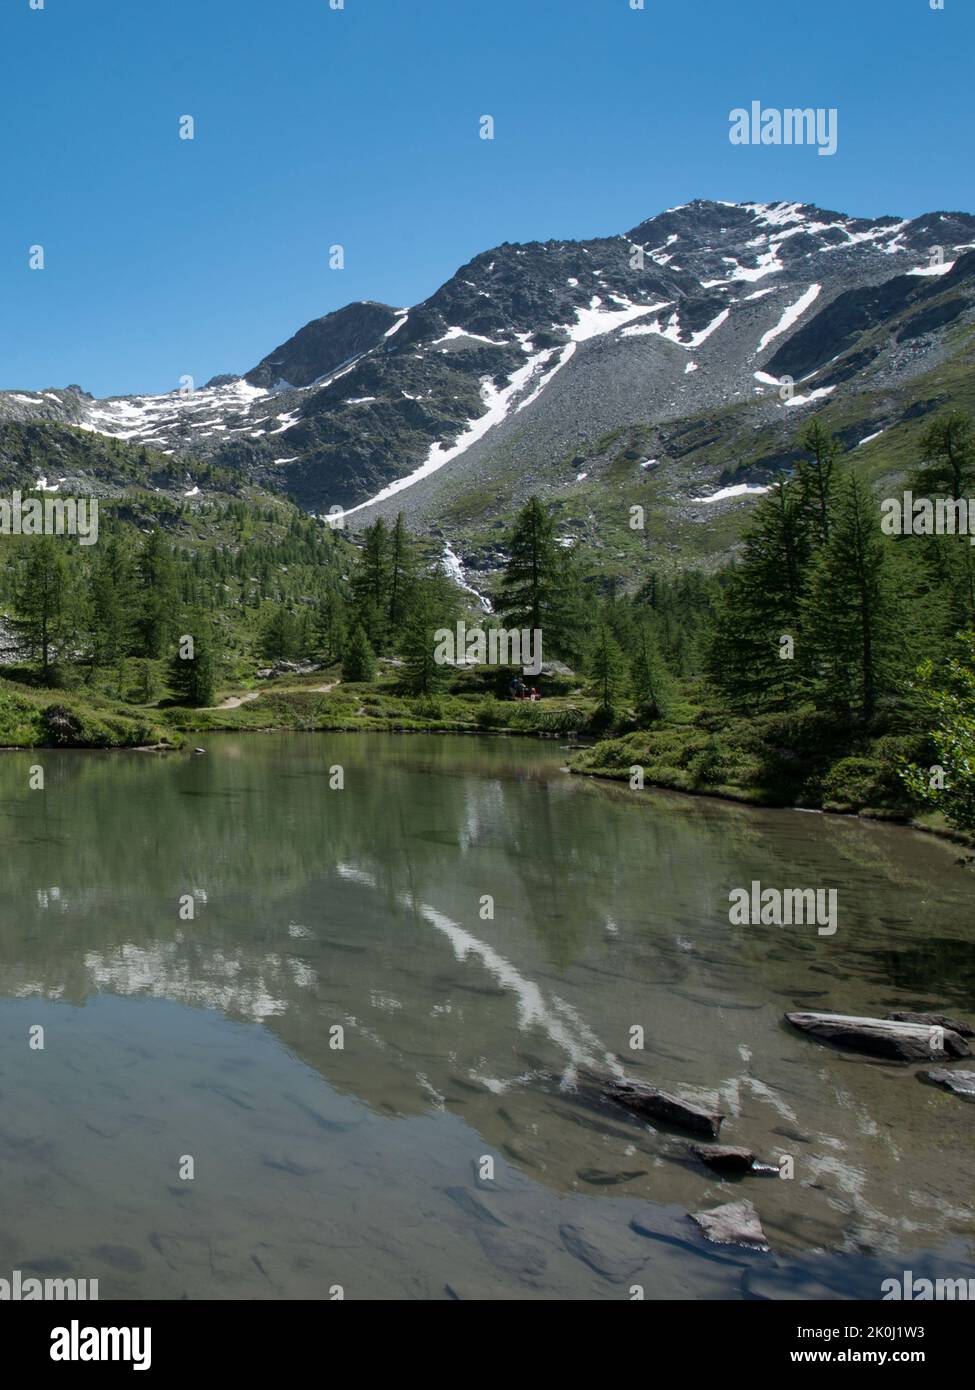 Lago darpy fotografías e imágenes de alta resolución - Alamy